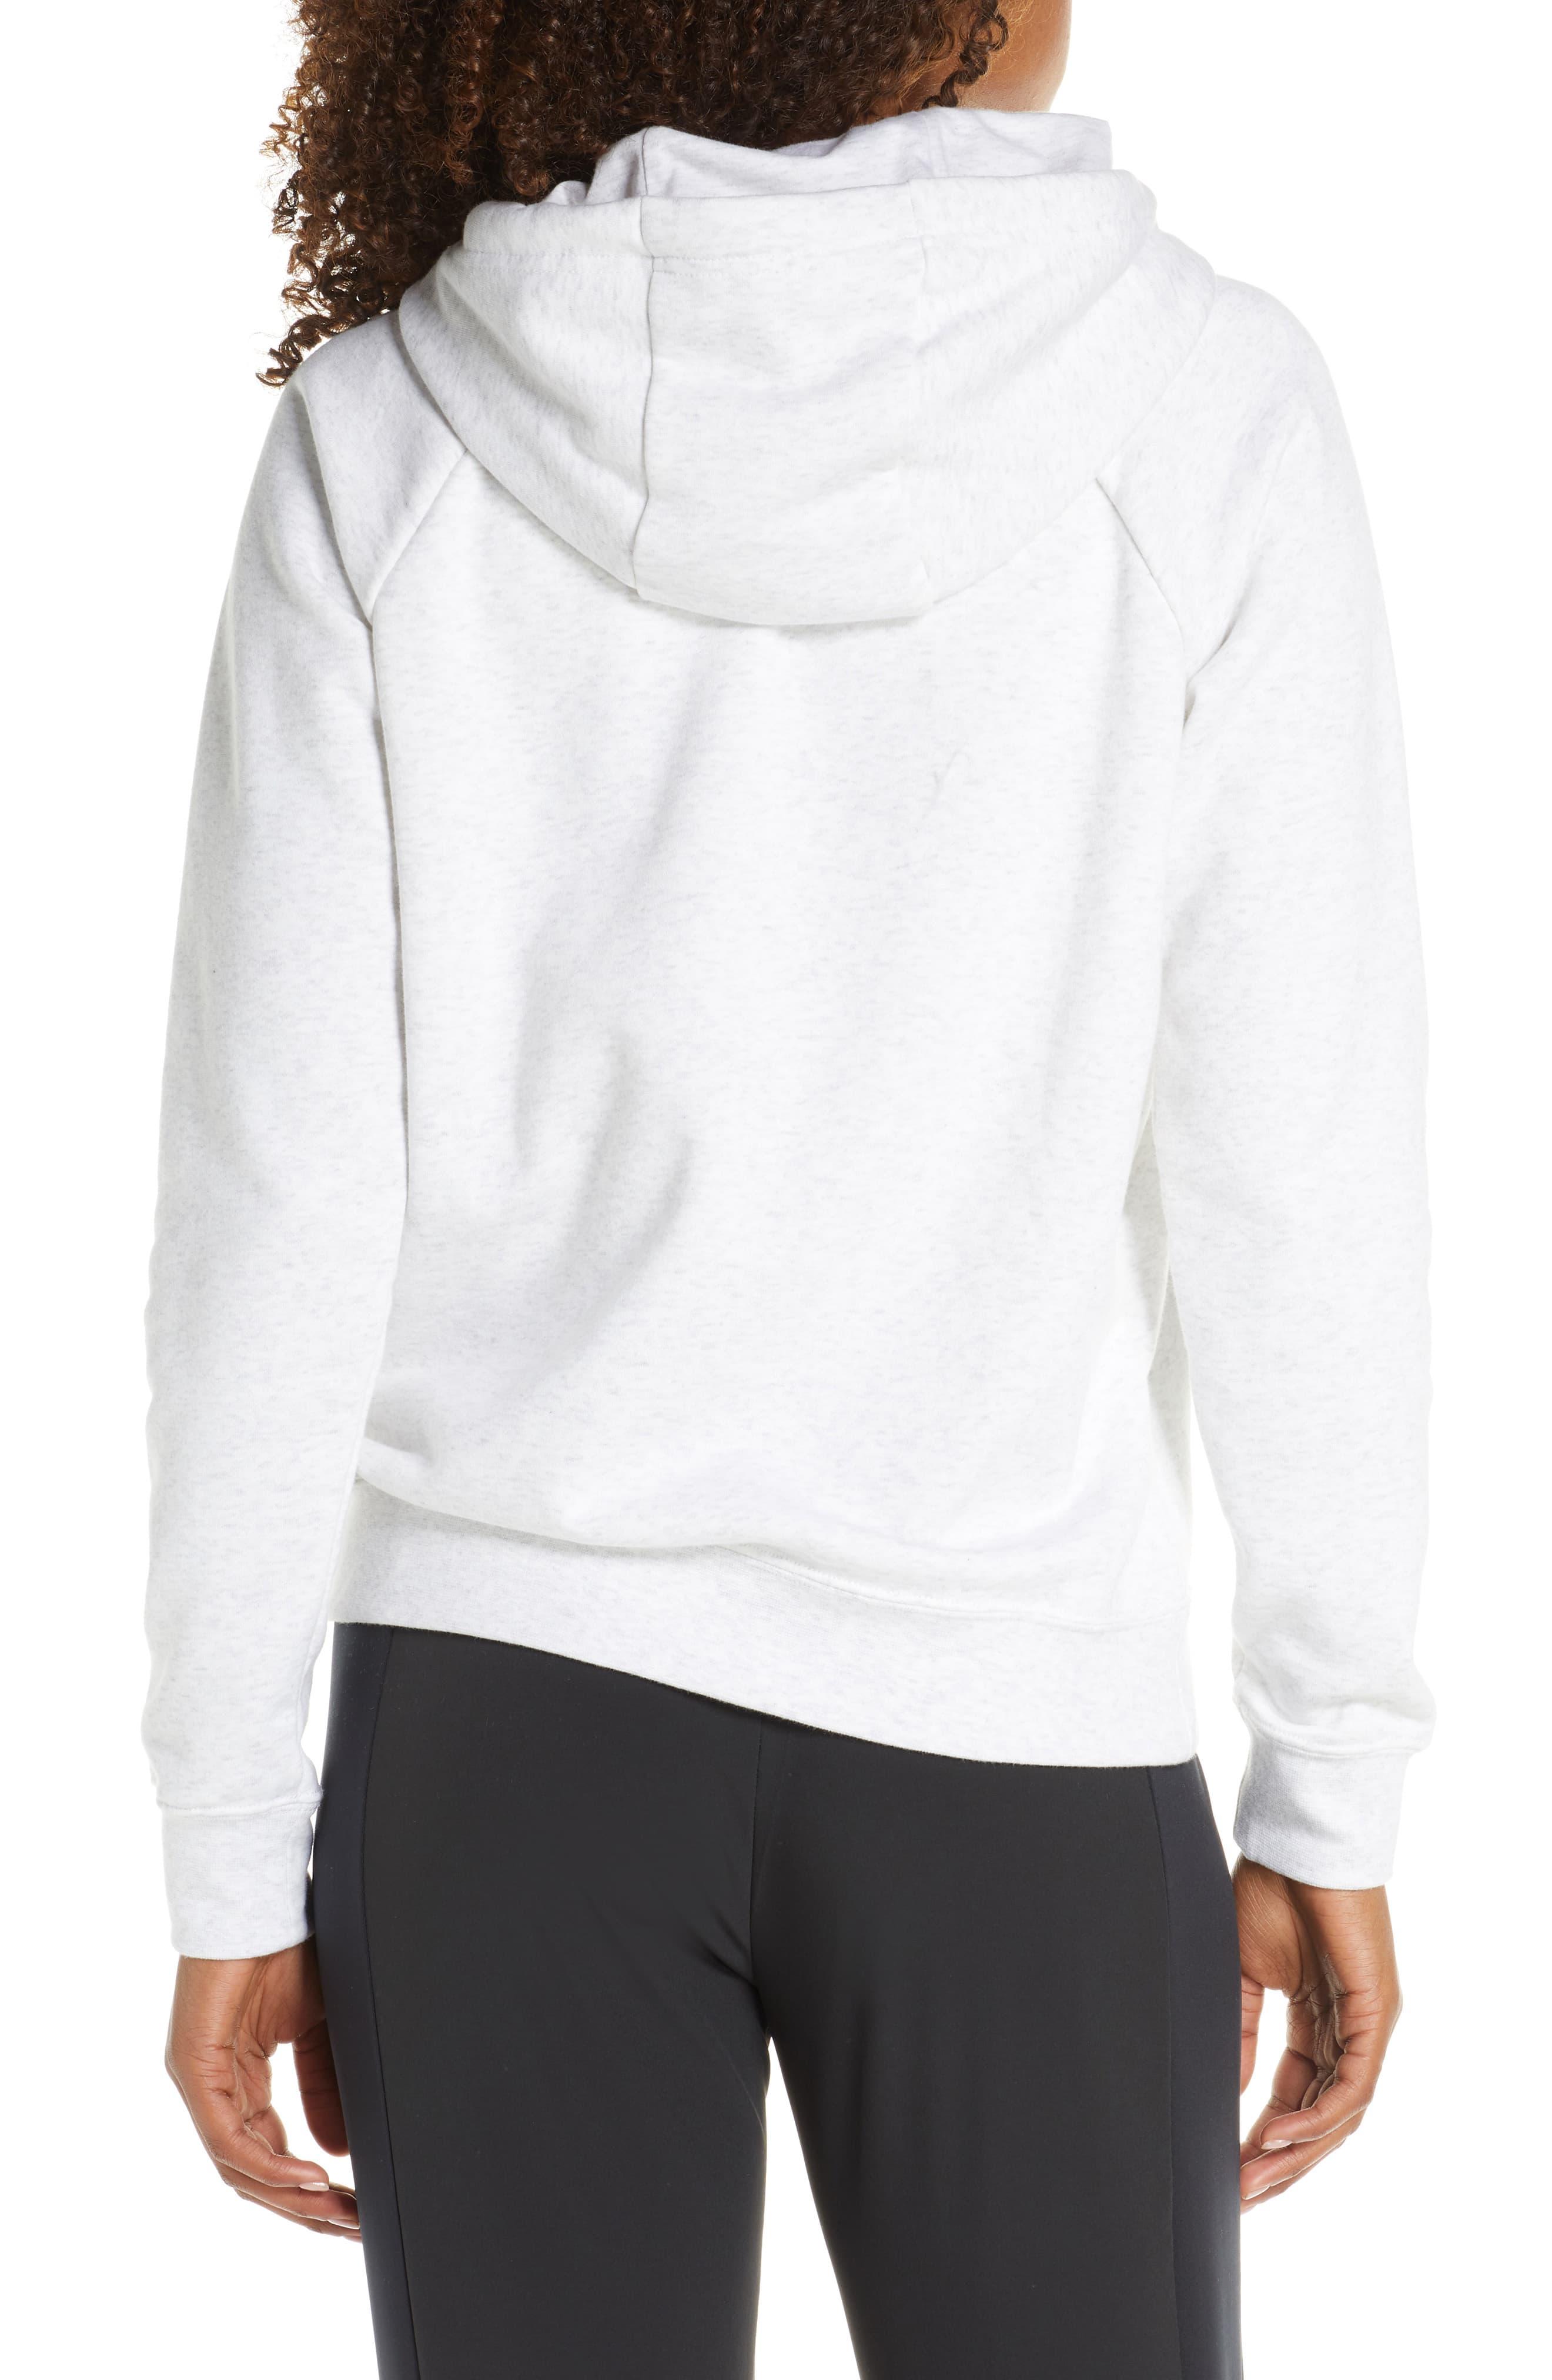 Nike Sportswear Essential Pullover Fleece Hoodie in White - Lyst